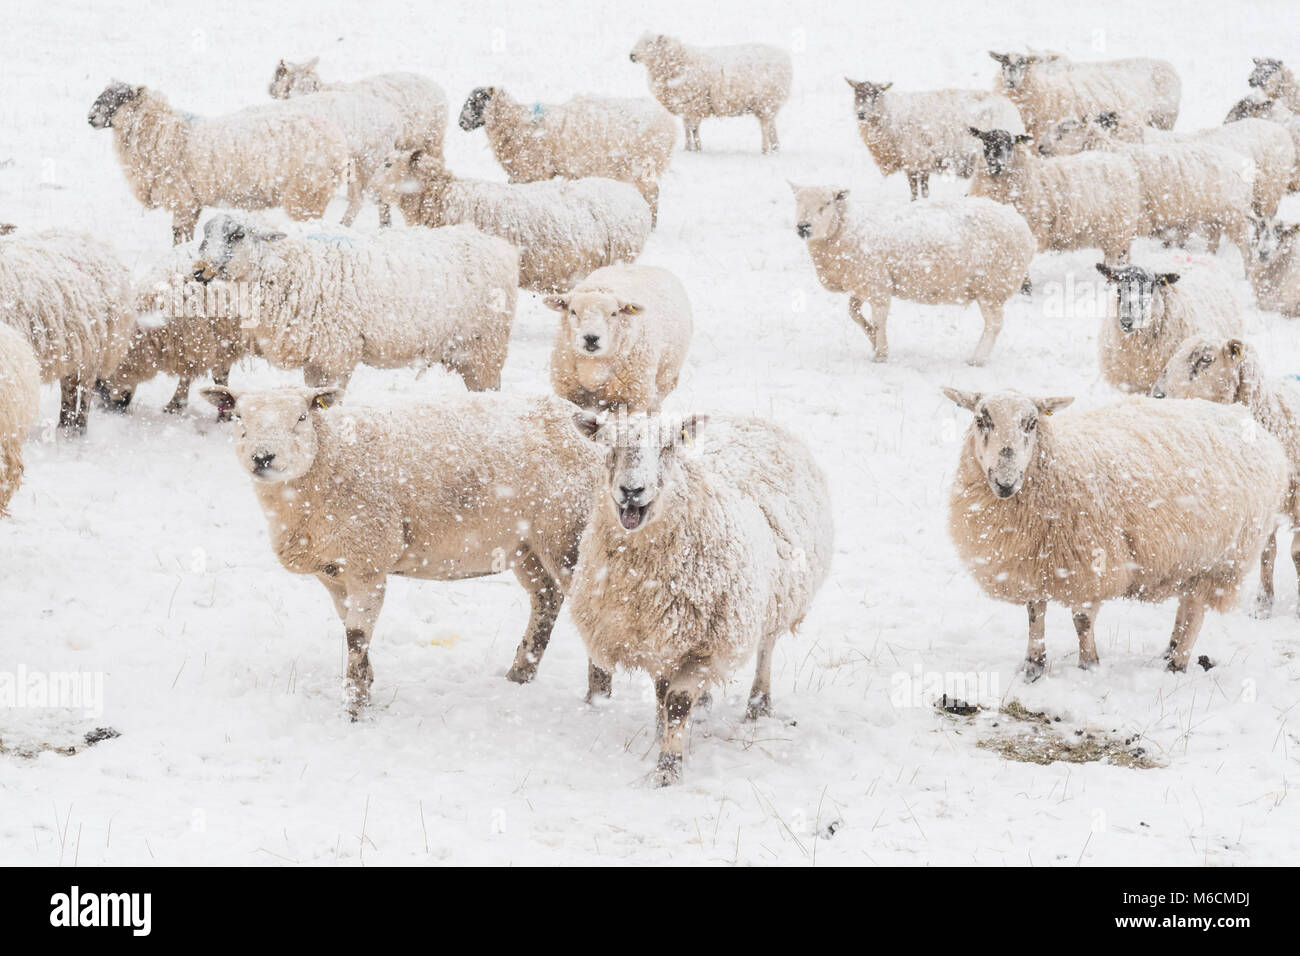 Les moutons dans la neige - Écosse, Royaume-Uni Banque D'Images